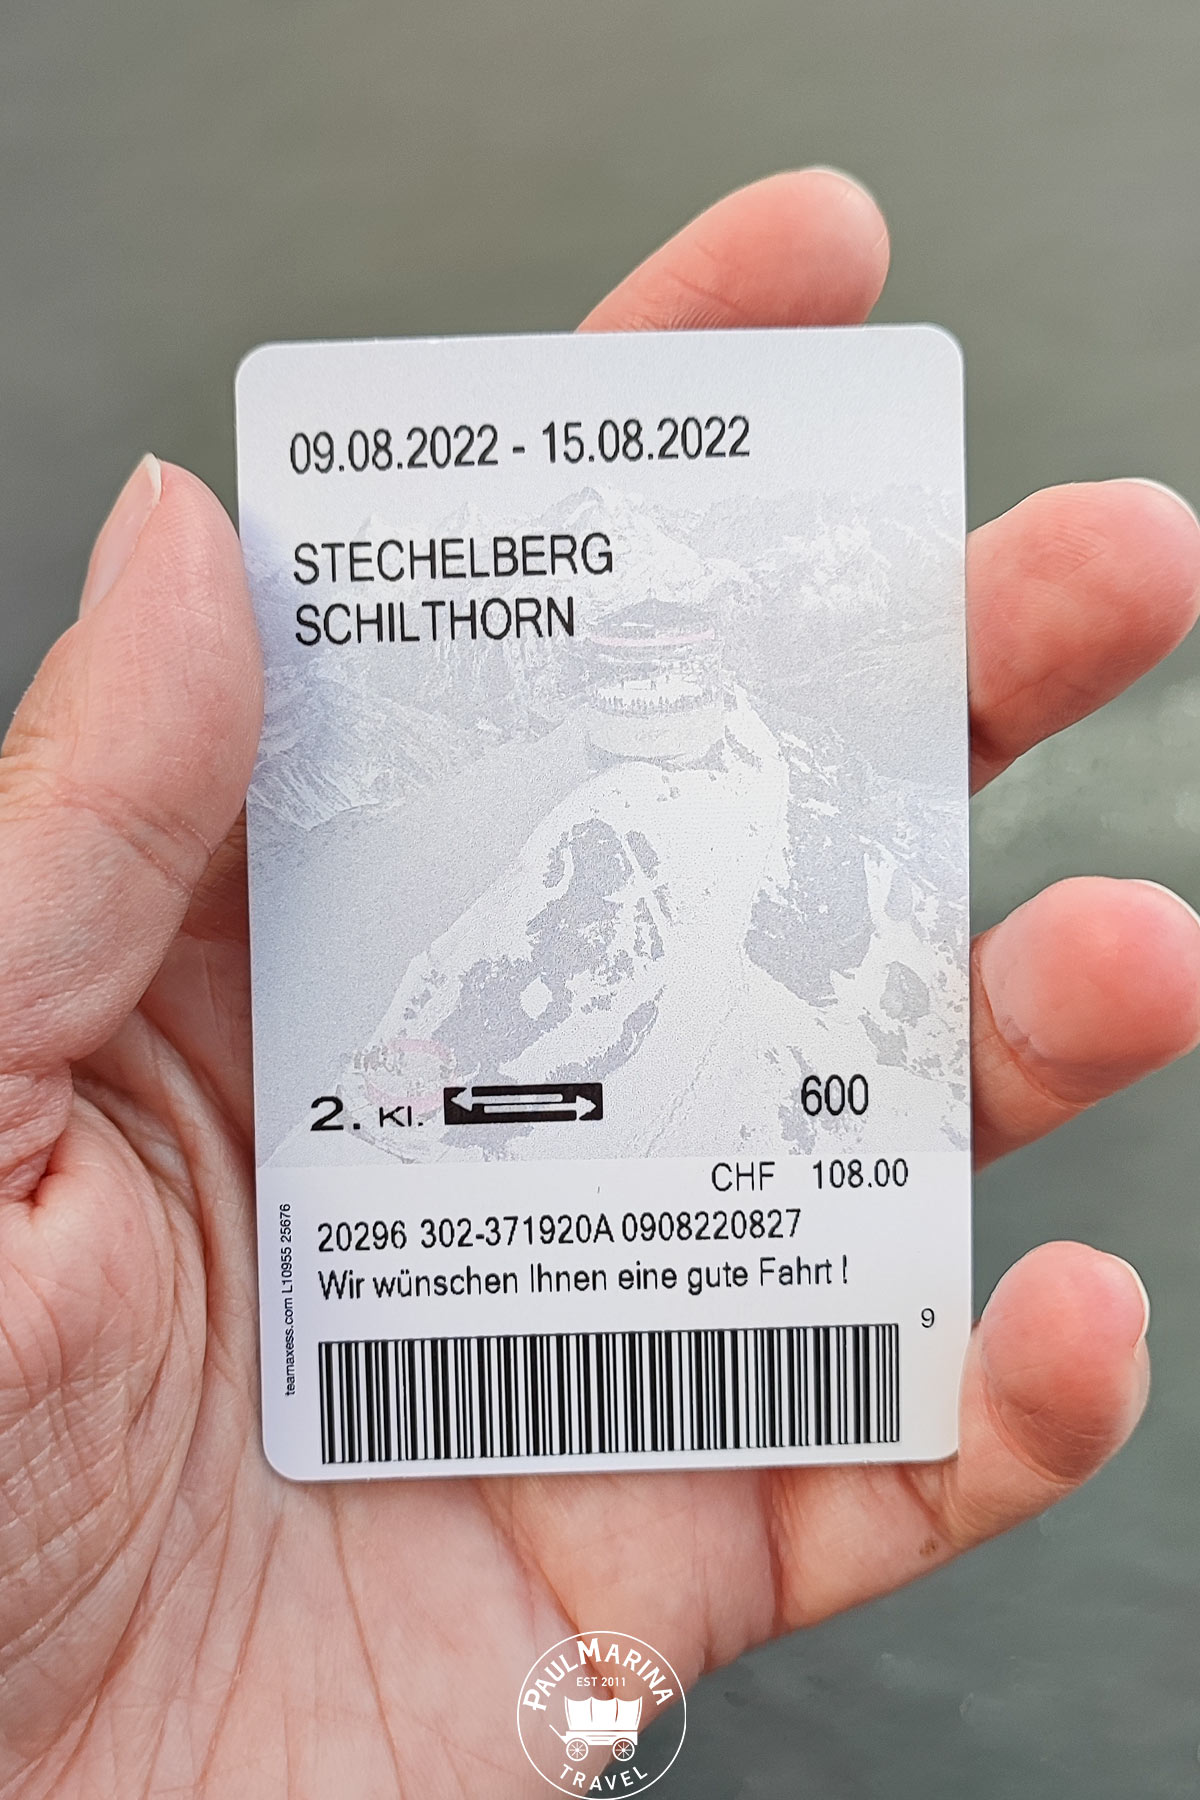 Return ticket from Stechelberg to Schilthorn